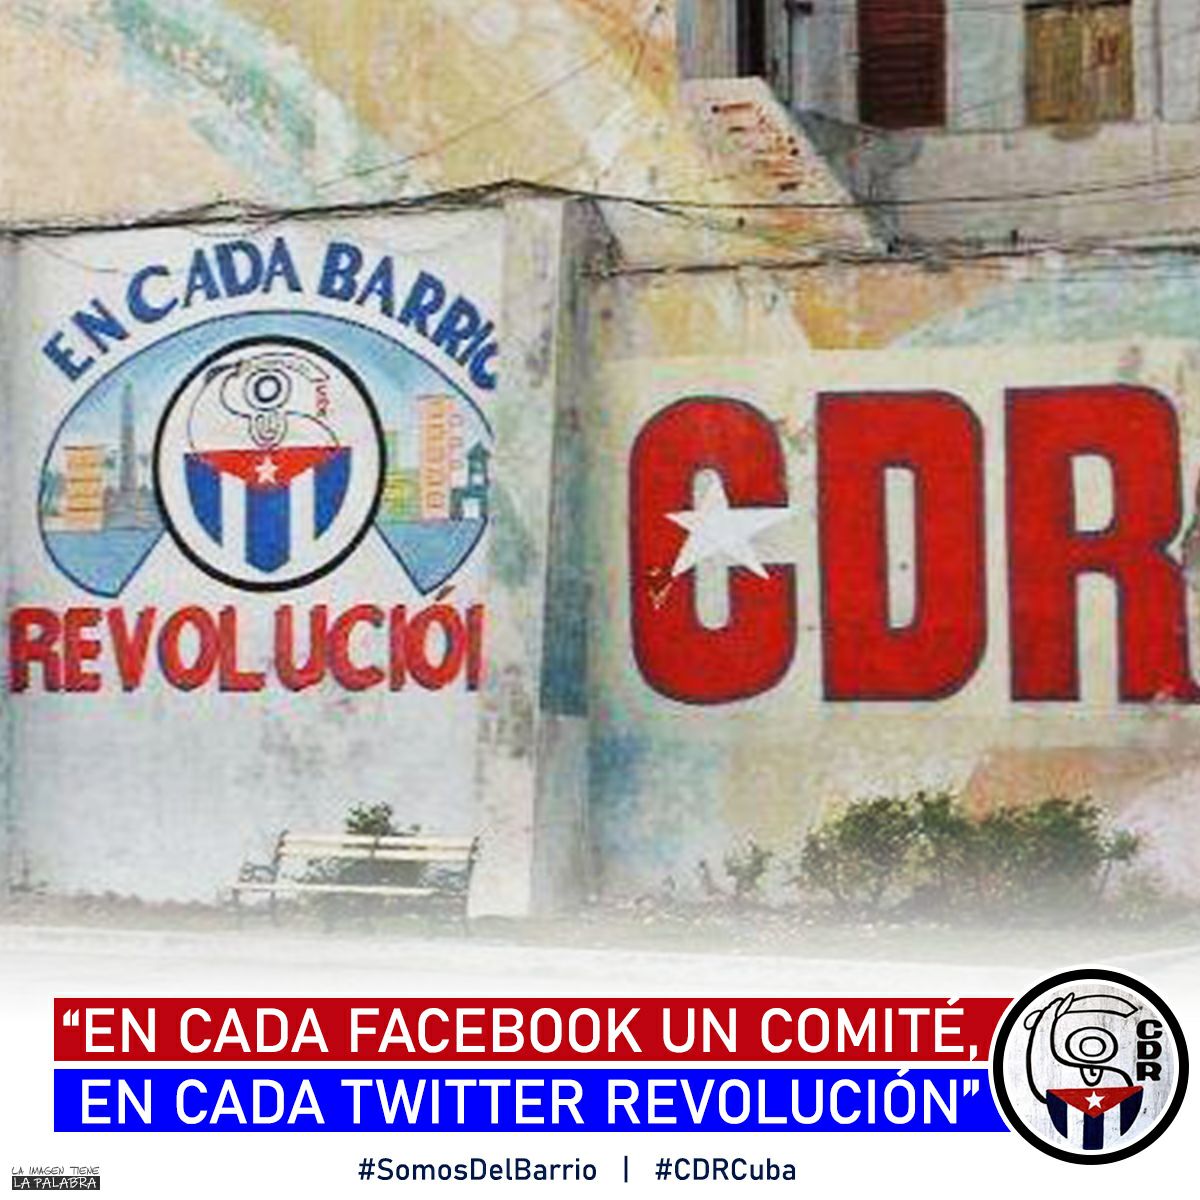 Somos del barrio, felicidades para la familia cederista cubana. #SoyCederista
#CubaViveEnSuHistoria
#CamagueyConFidel